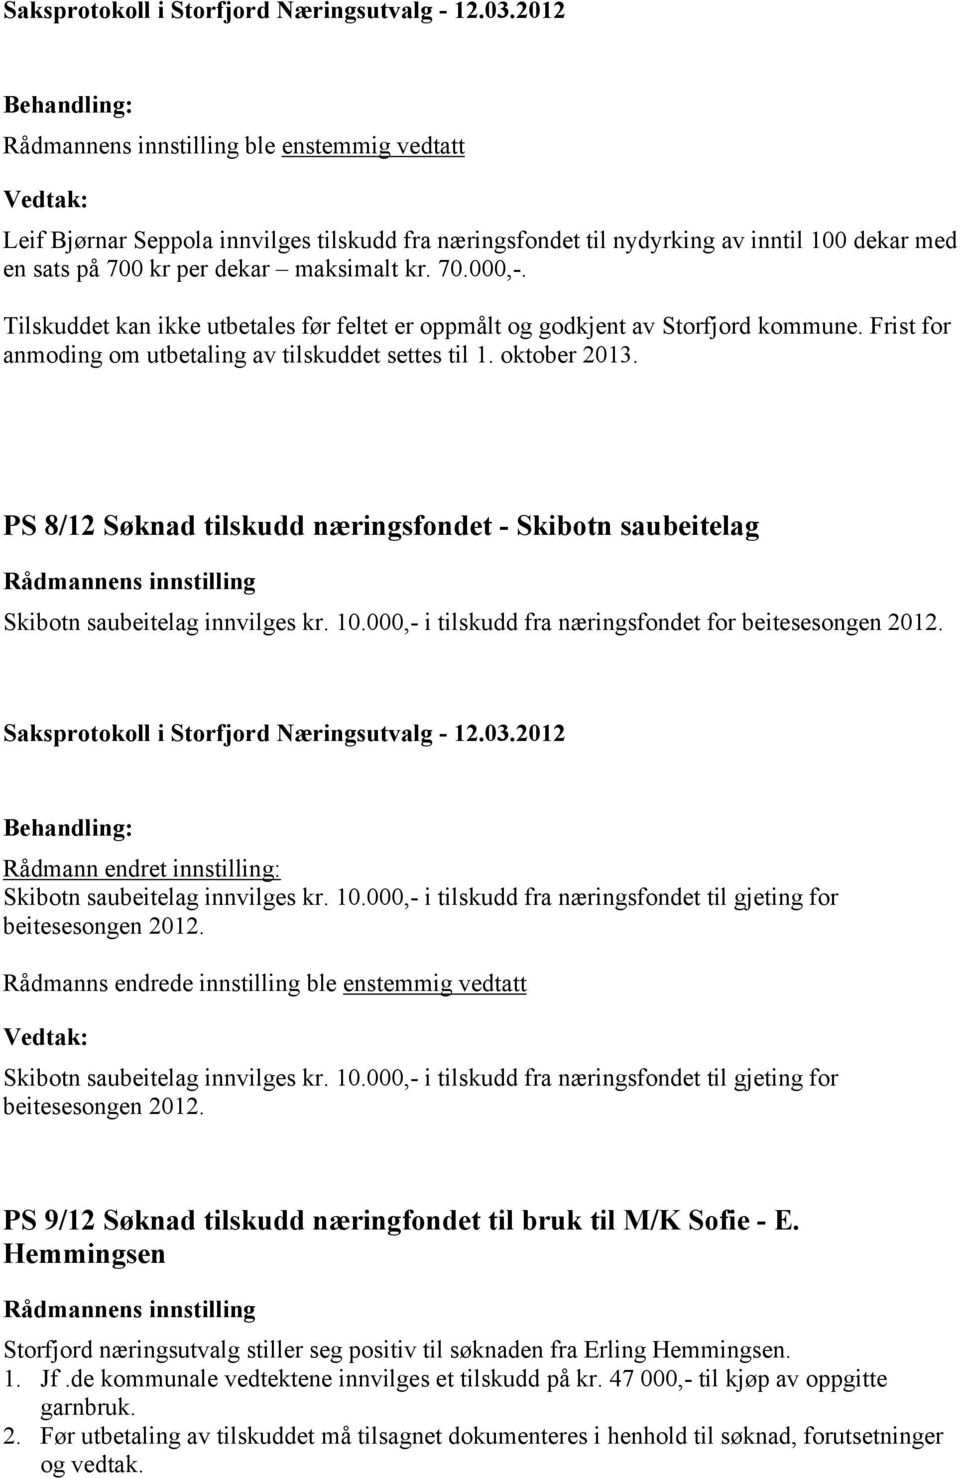 PS 8/12 Søknad tilskudd næringsfondet - Skibotn saubeitelag Skibotn saubeitelag innvilges kr. 10.000,- i tilskudd fra næringsfondet for beitesesongen 2012.